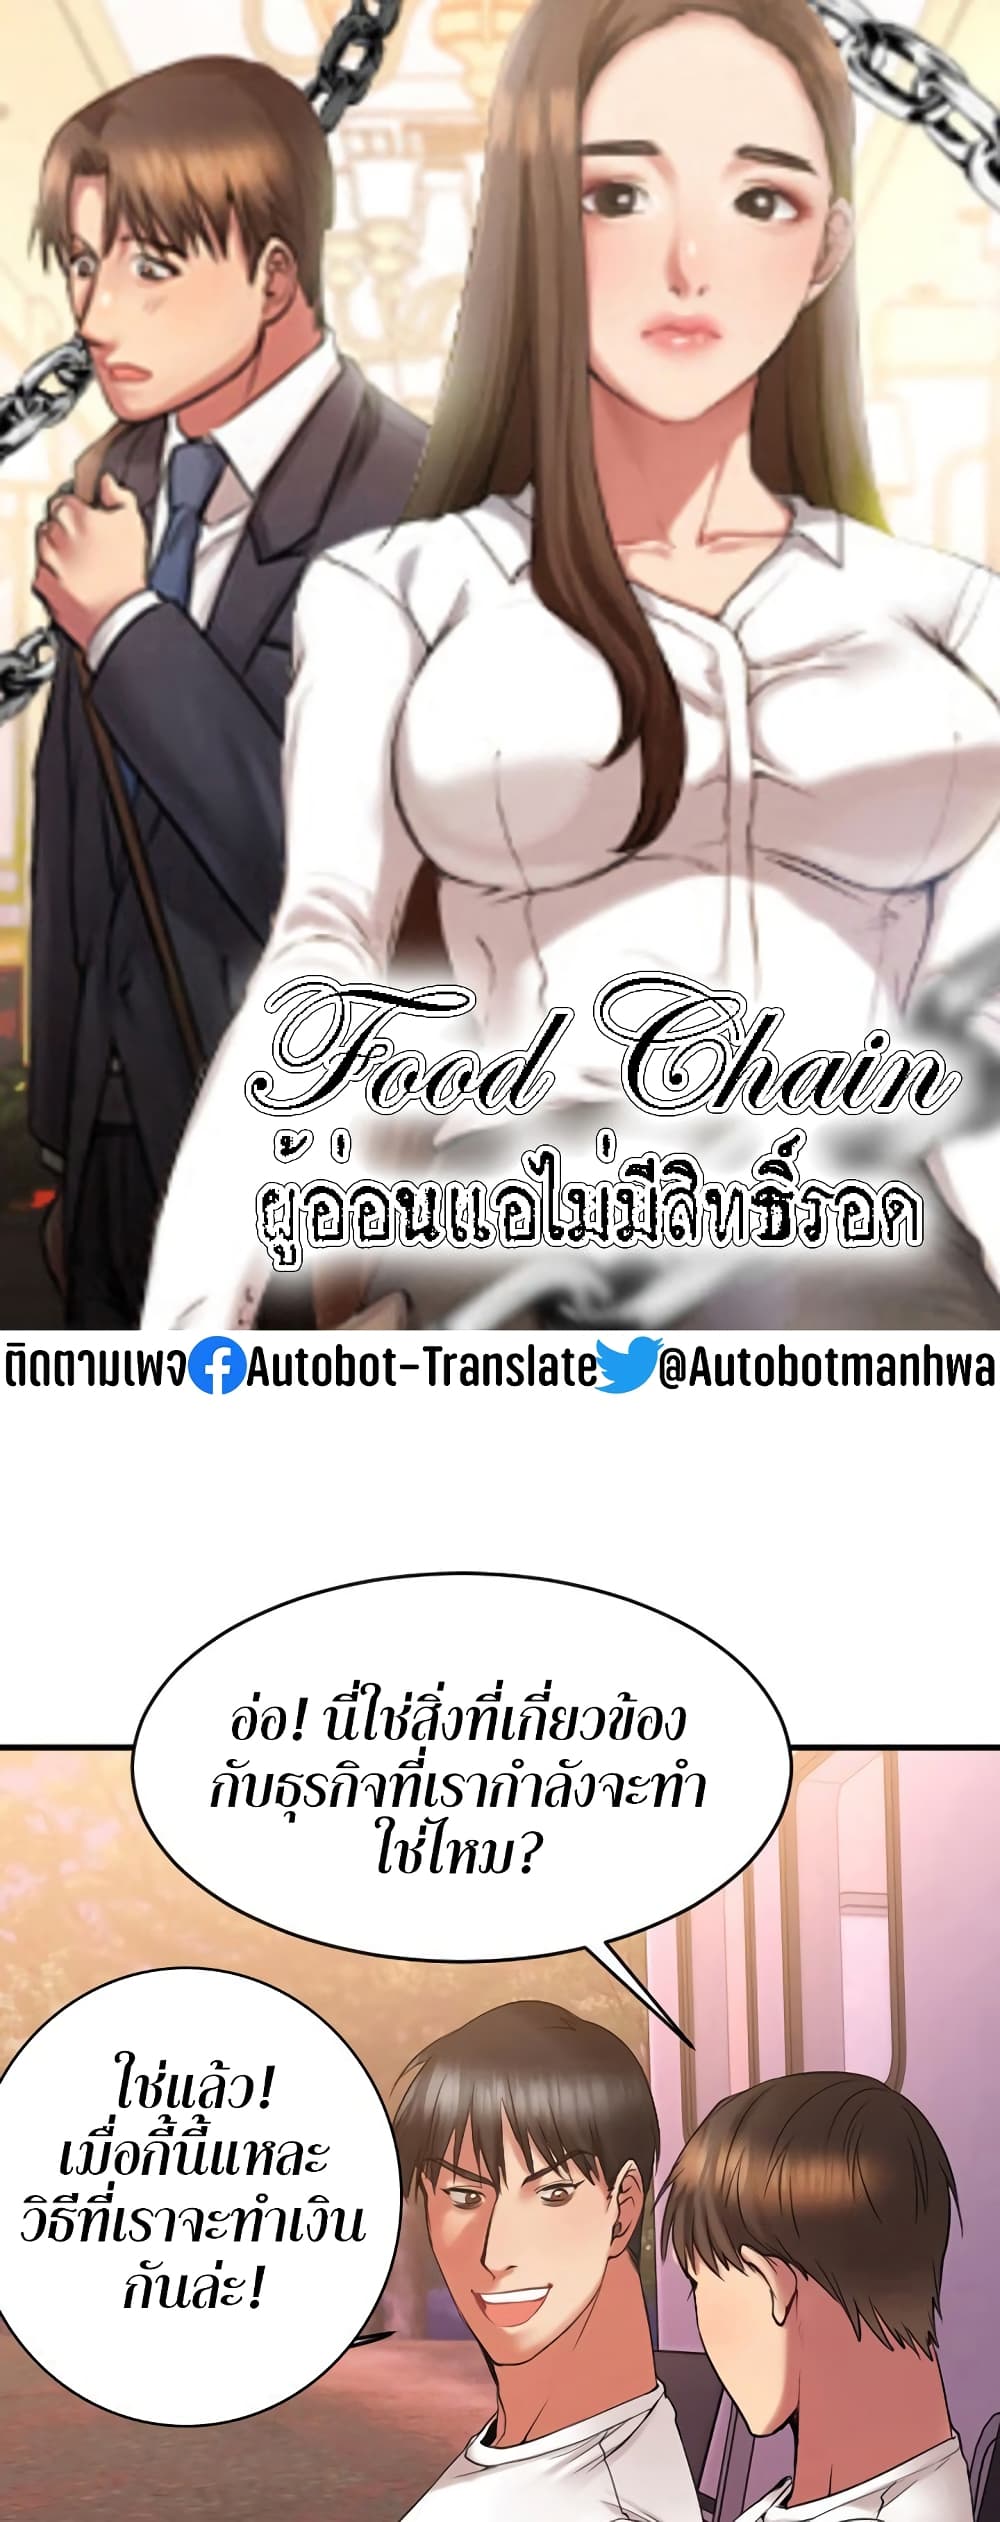 Food Chain 8 (1)